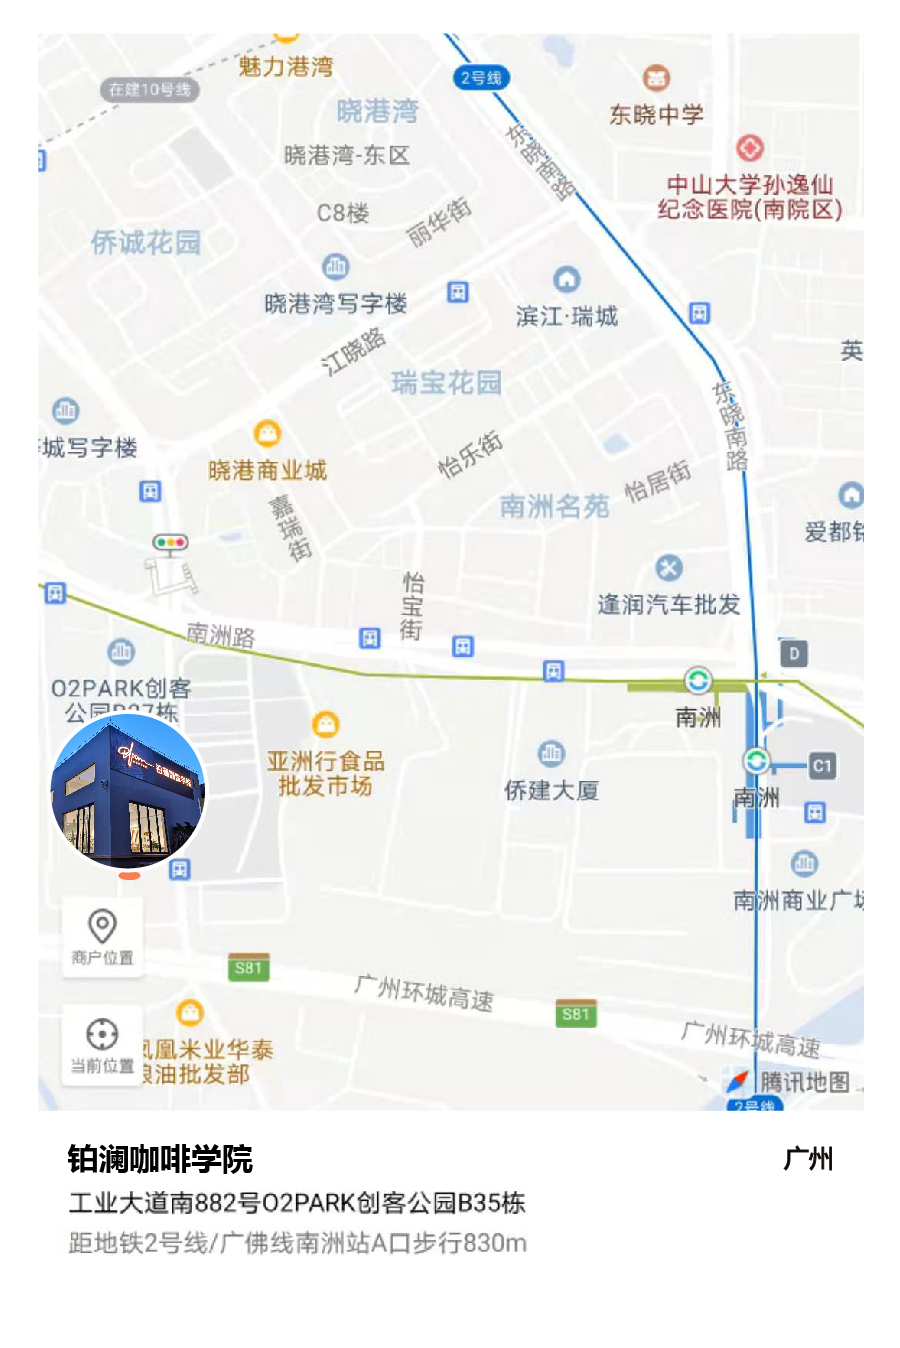 guangzhoumap.jpg